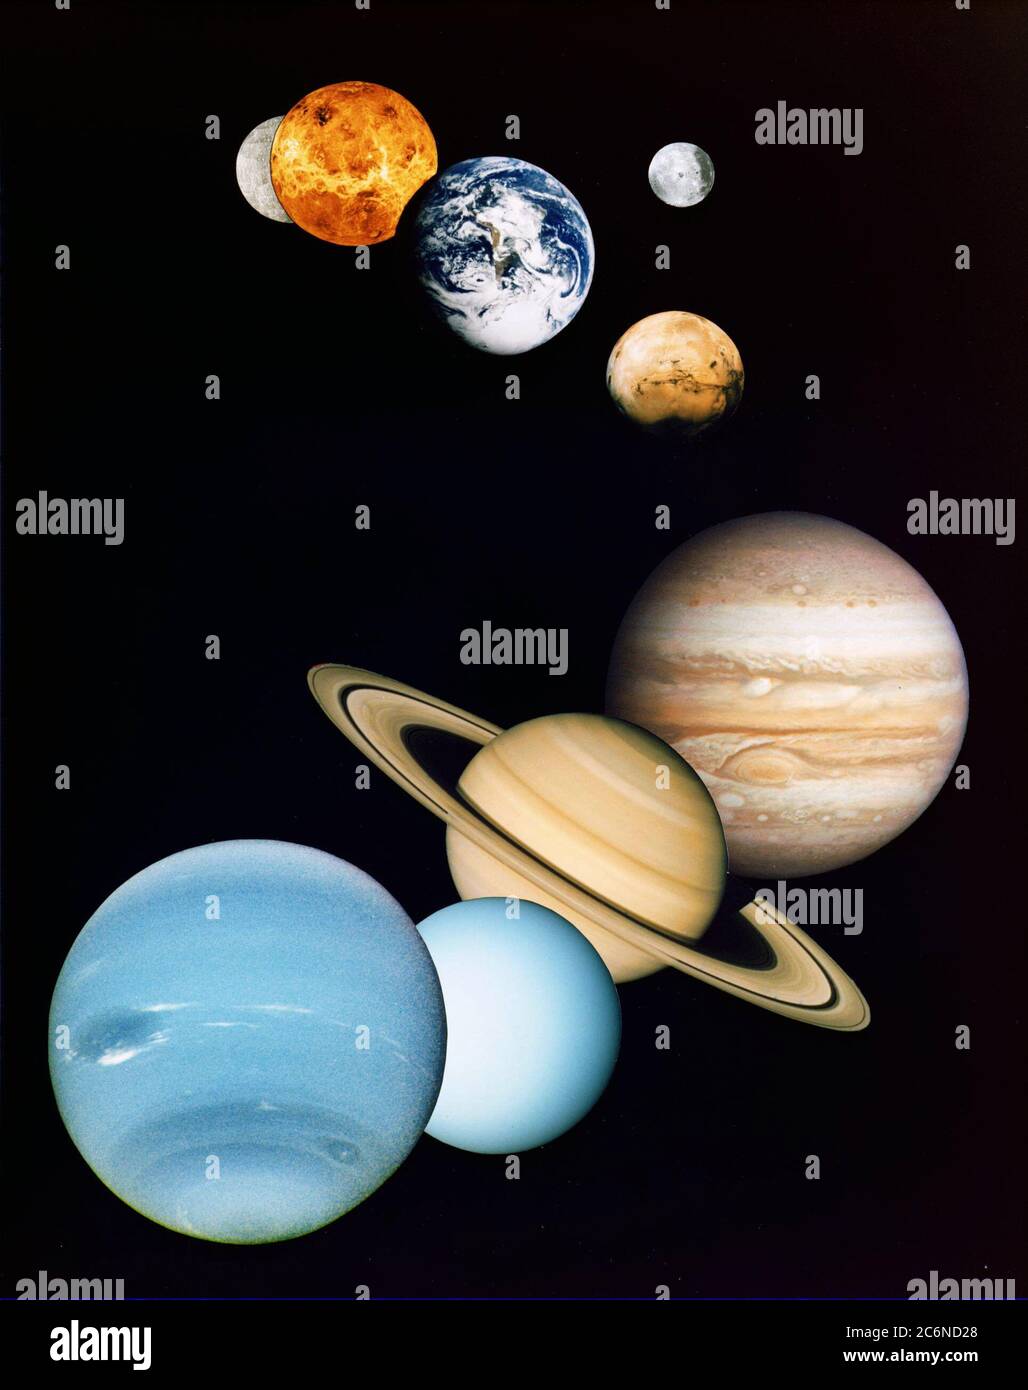 Este es un montaje de imágenes planetarias tomadas por naves espaciales manejadas por el Laboratorio de Propulsión a Chorro de la NASA en Pasadena, CA. Se incluyen (de arriba a abajo) imágenes de Mercurio, Venus, Tierra (y Luna), Marte, Júpiter, Saturno, Urano y Neptuno ca. 1997 Foto de stock